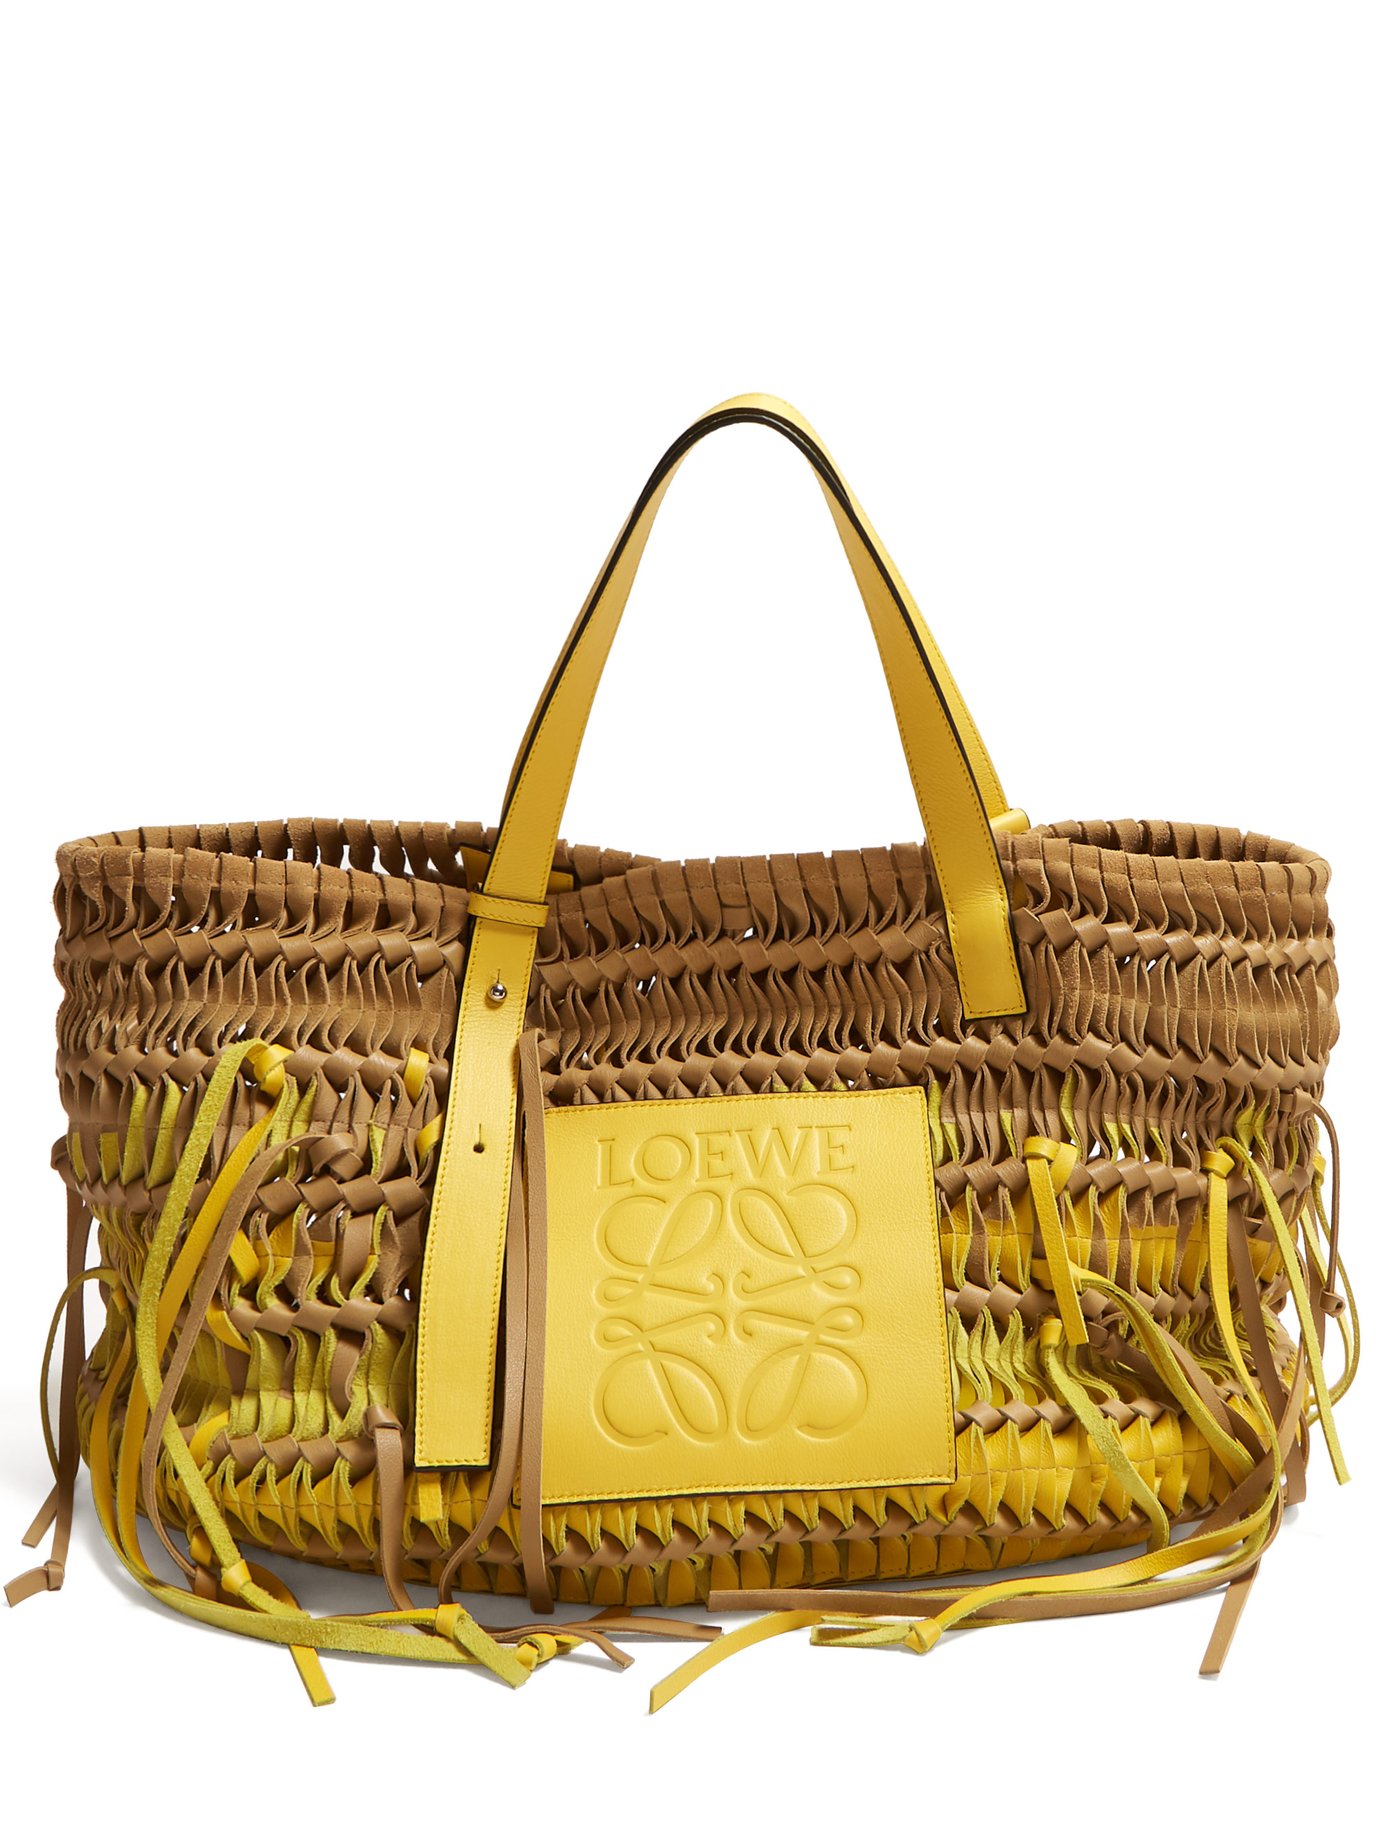 Loewe Basket Tassel Bag